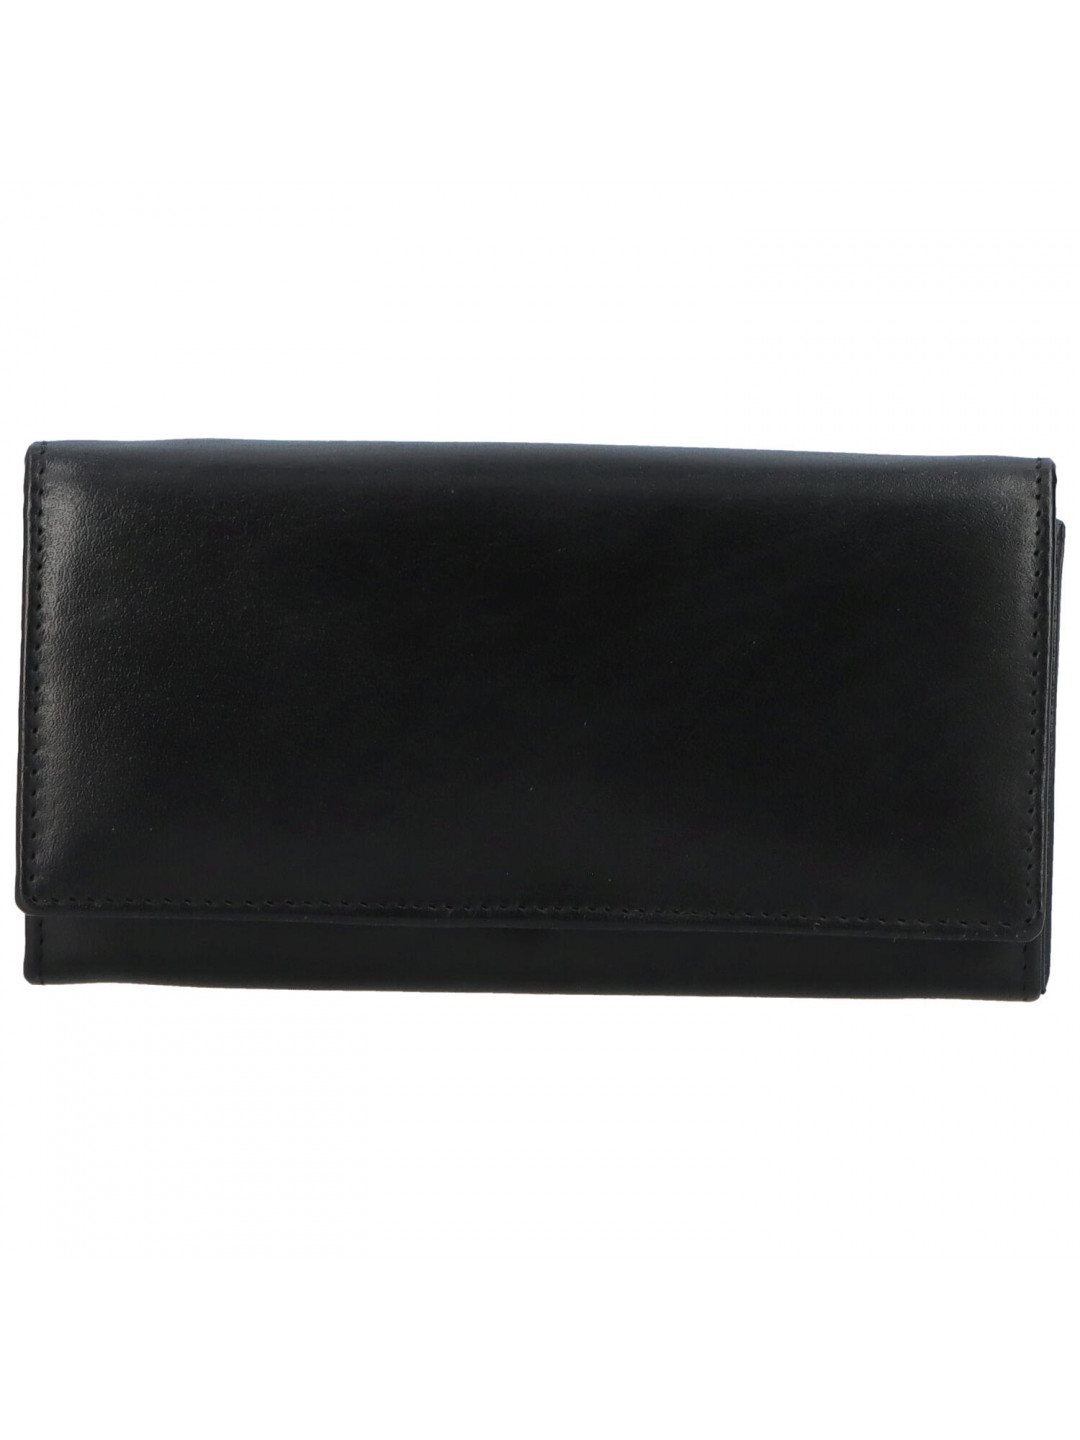 Dámská kožená peněženka černá – Tomas Kalasia